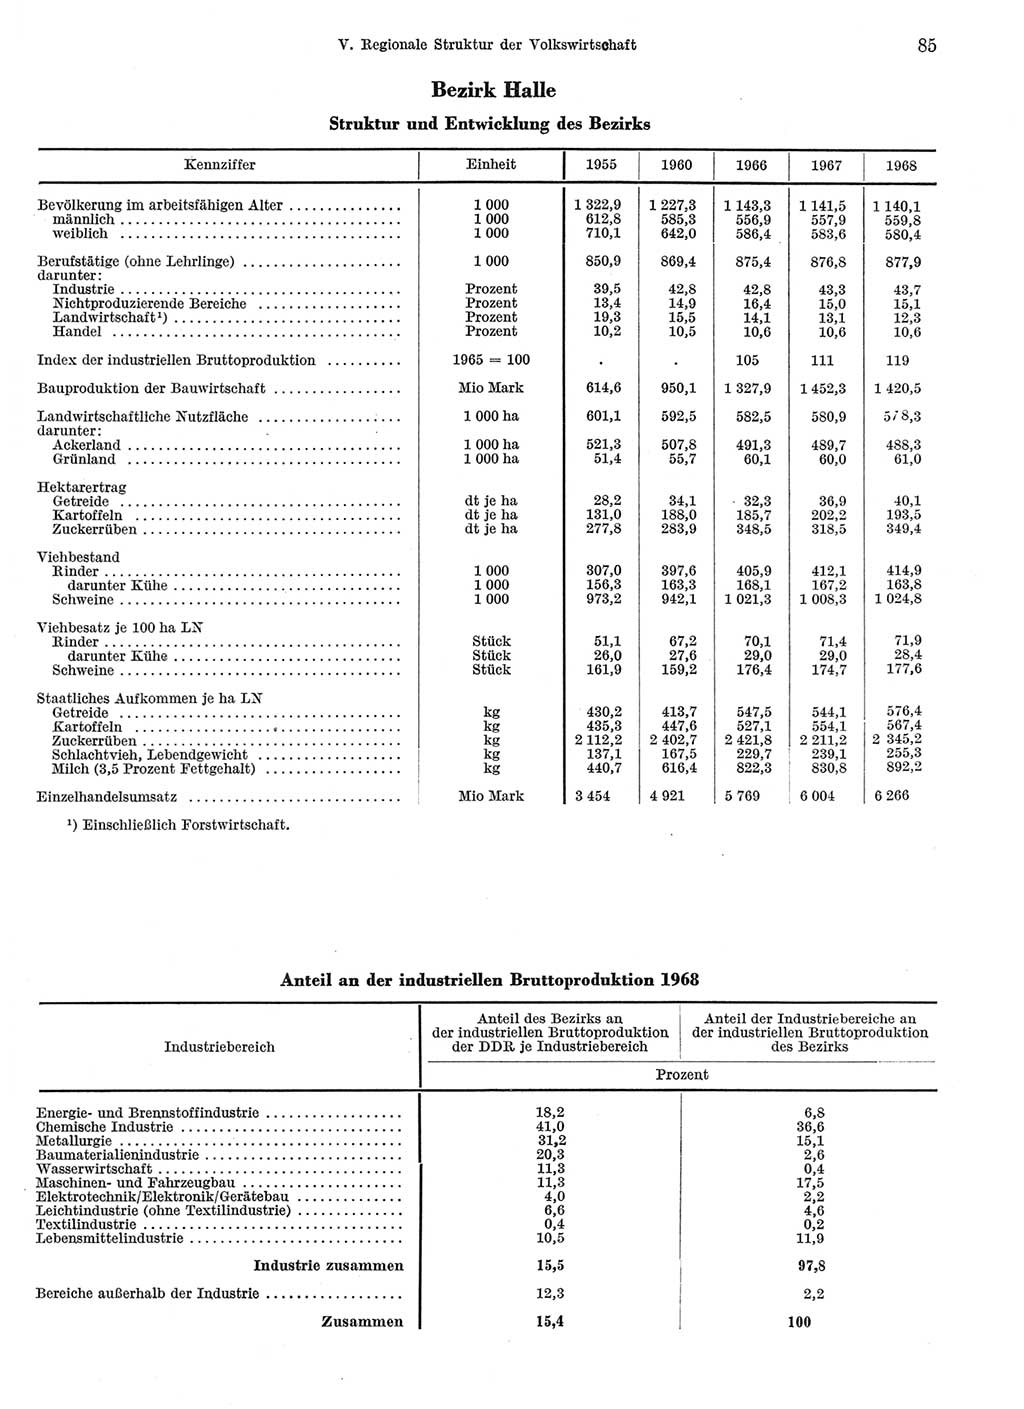 Statistisches Jahrbuch der Deutschen Demokratischen Republik (DDR) 1969, Seite 85 (Stat. Jb. DDR 1969, S. 85)